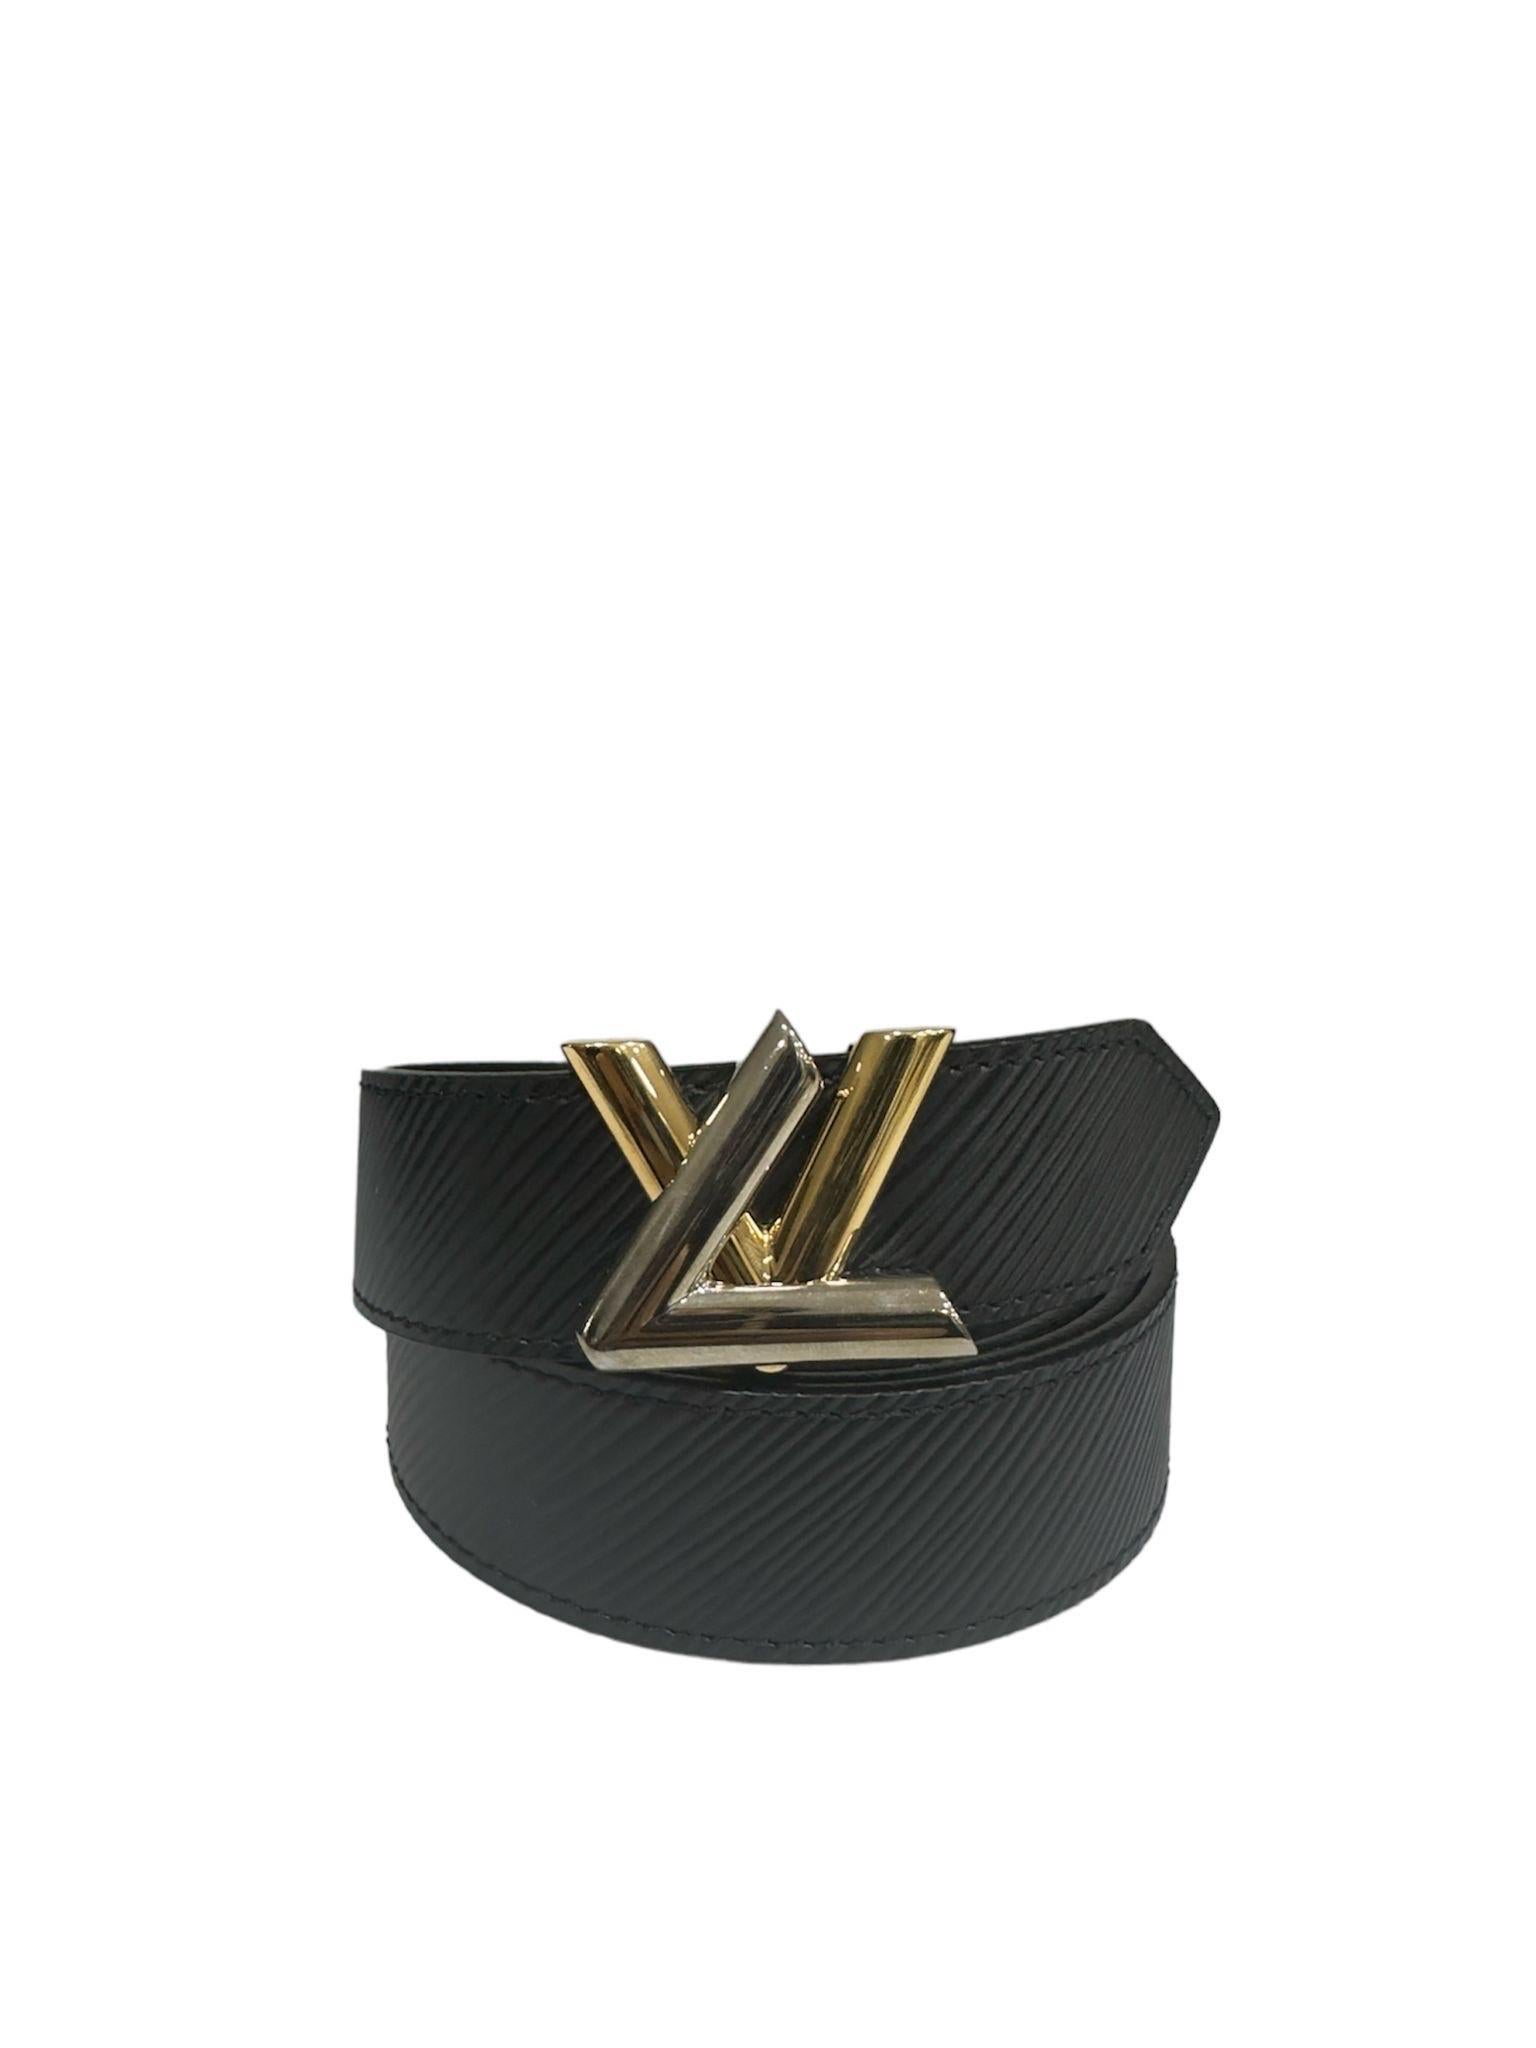 Cintura firmata Louis Vuitton, modello Twist, realizzata in pelle Epi nera con hardware argento e oro. Dotata di una fibbia con logo 